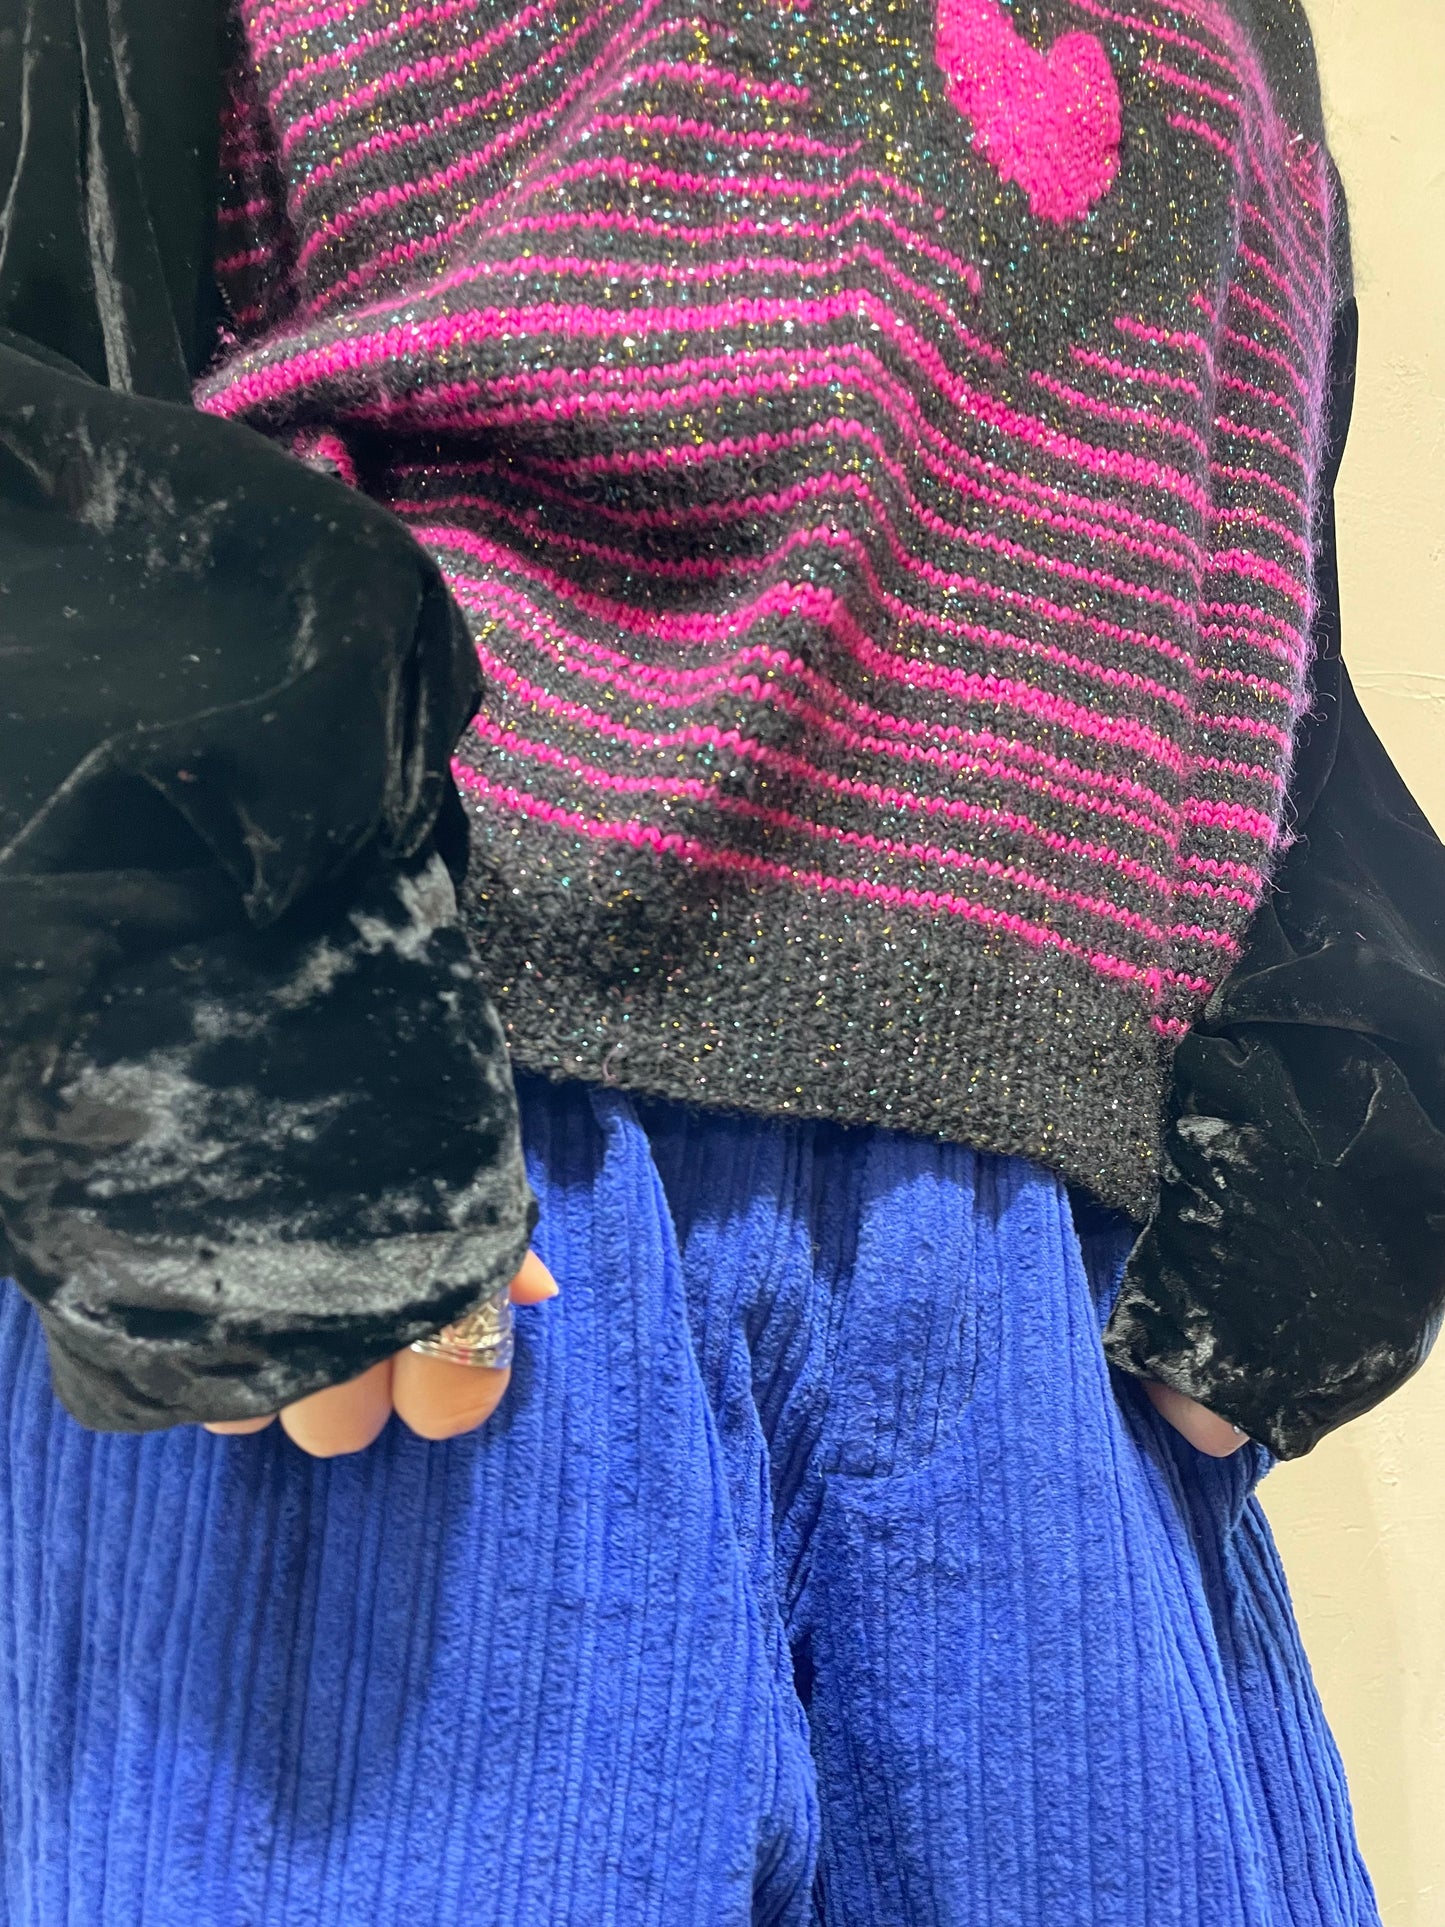 Vintage Knit Sweater [L25738]